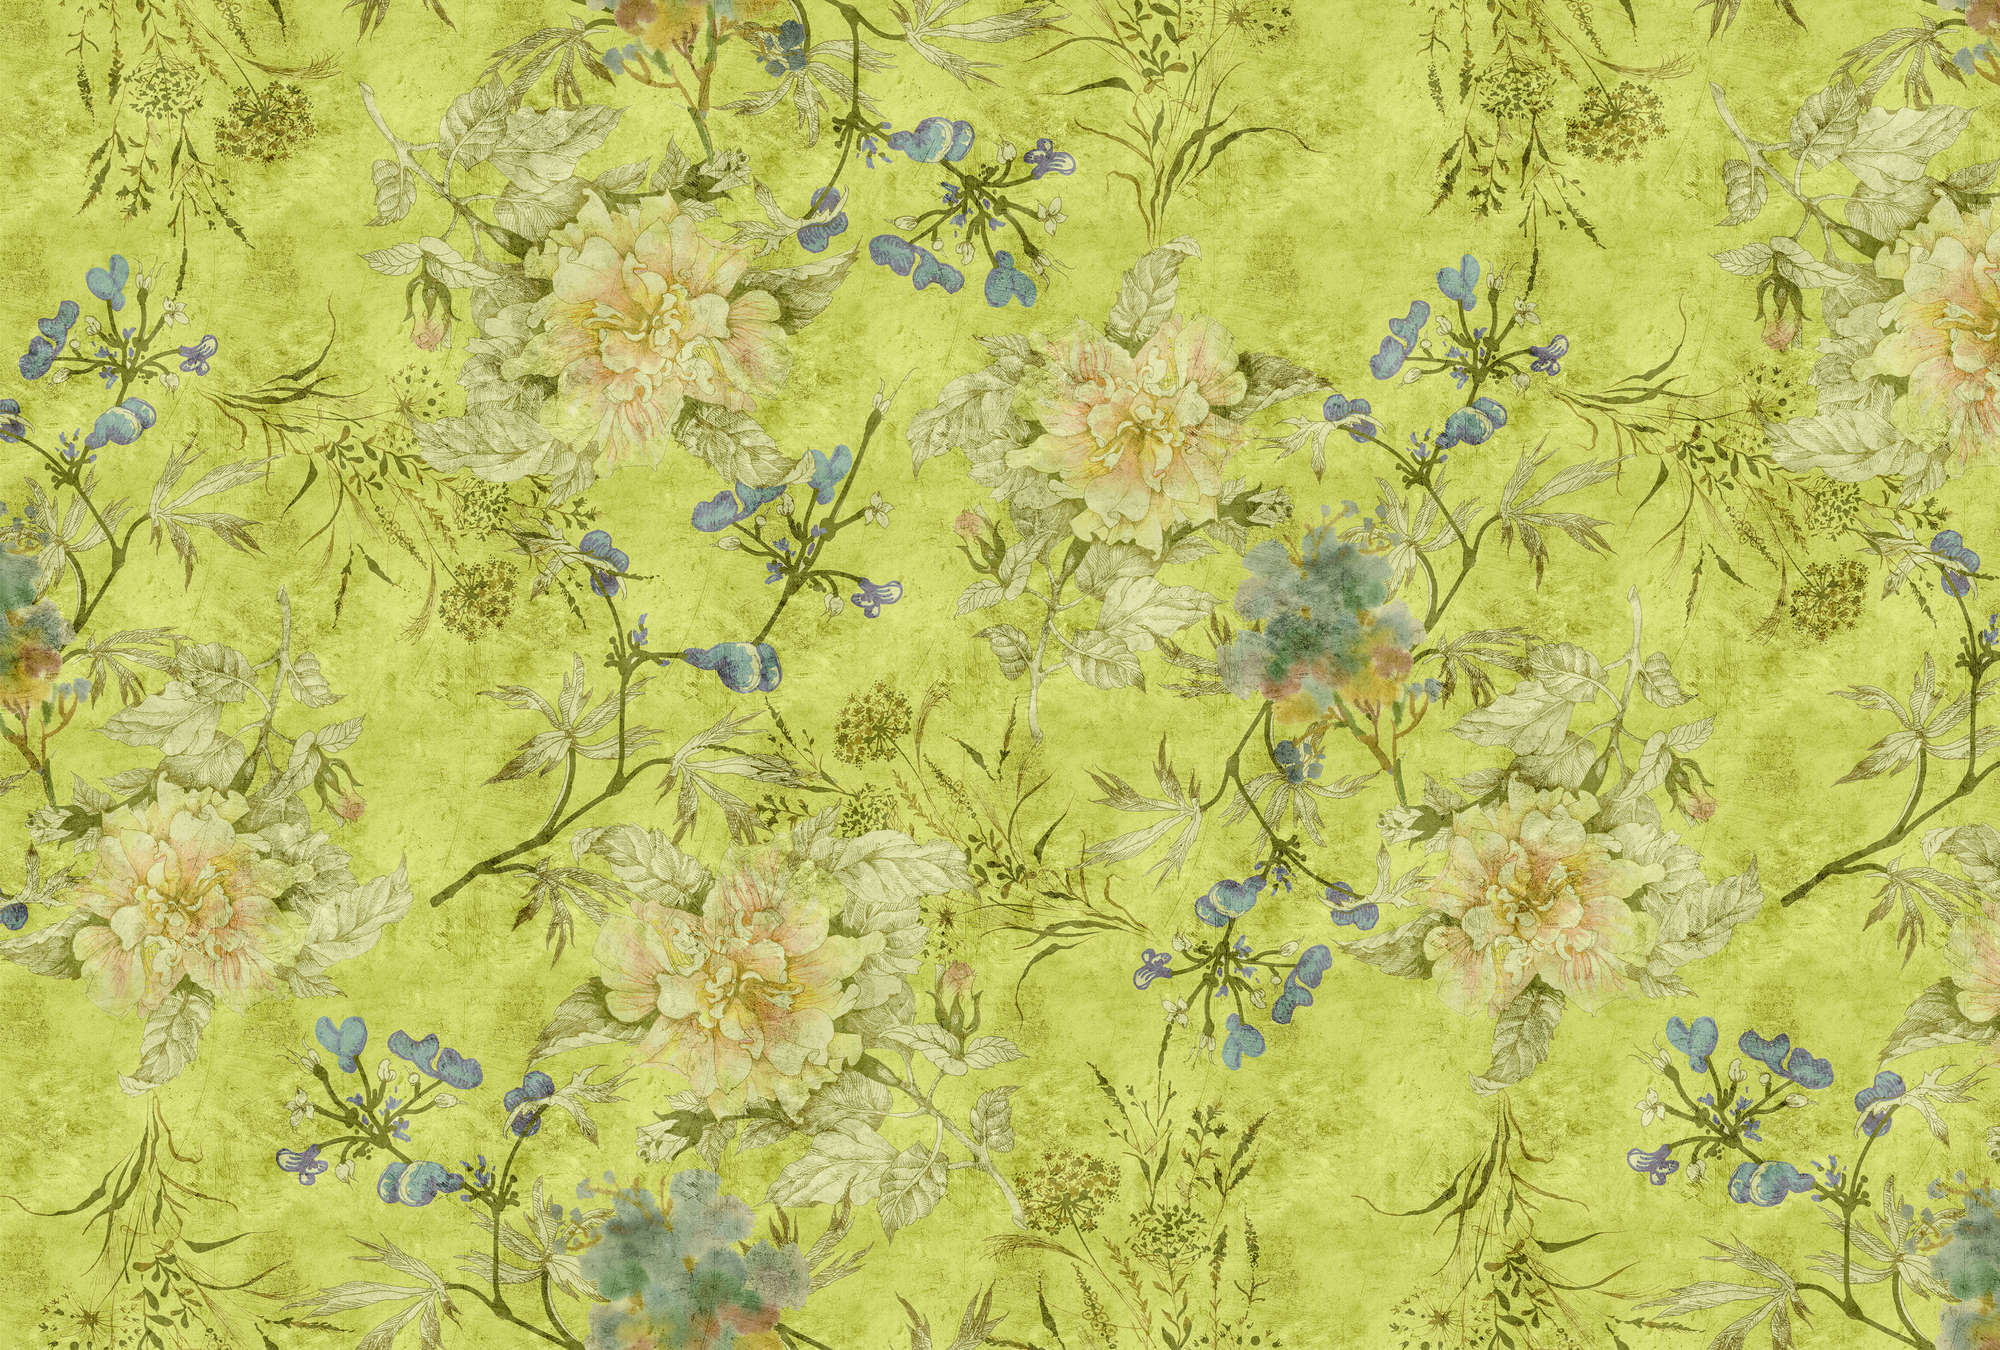             Tenderblossom 1 - Papel pintado fotográfico con zarcillos de flores modernas en una estructura rayada - Verde | Perla liso no tejido
        